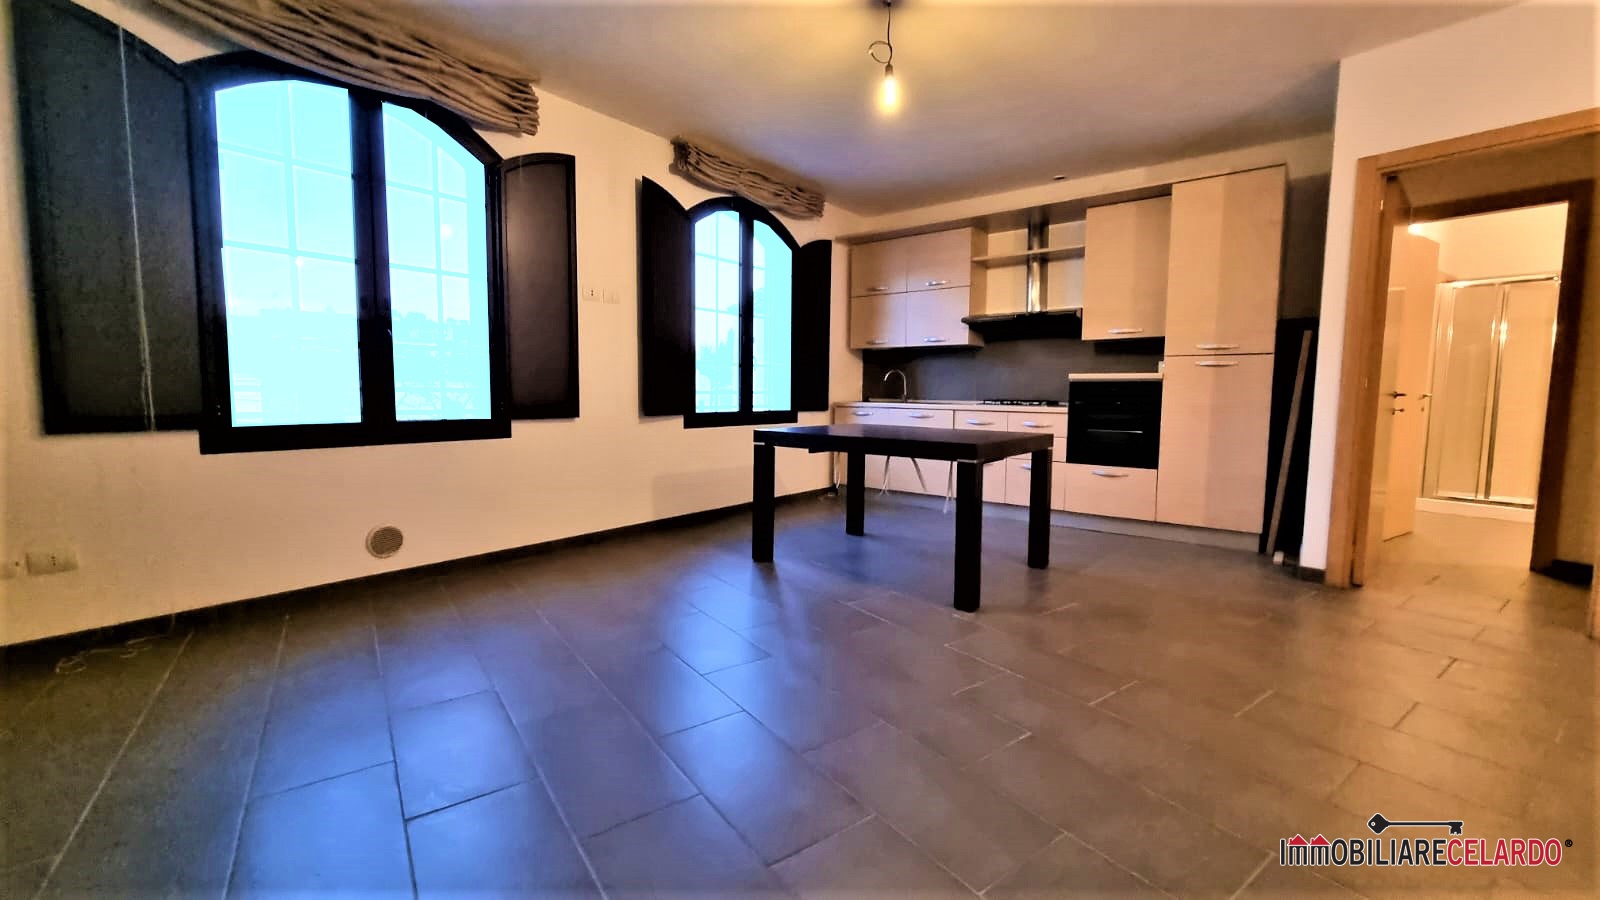 Appartamento in vendita a Colle di Val d'Elsa, 2 locali, prezzo € 93.000 | PortaleAgenzieImmobiliari.it